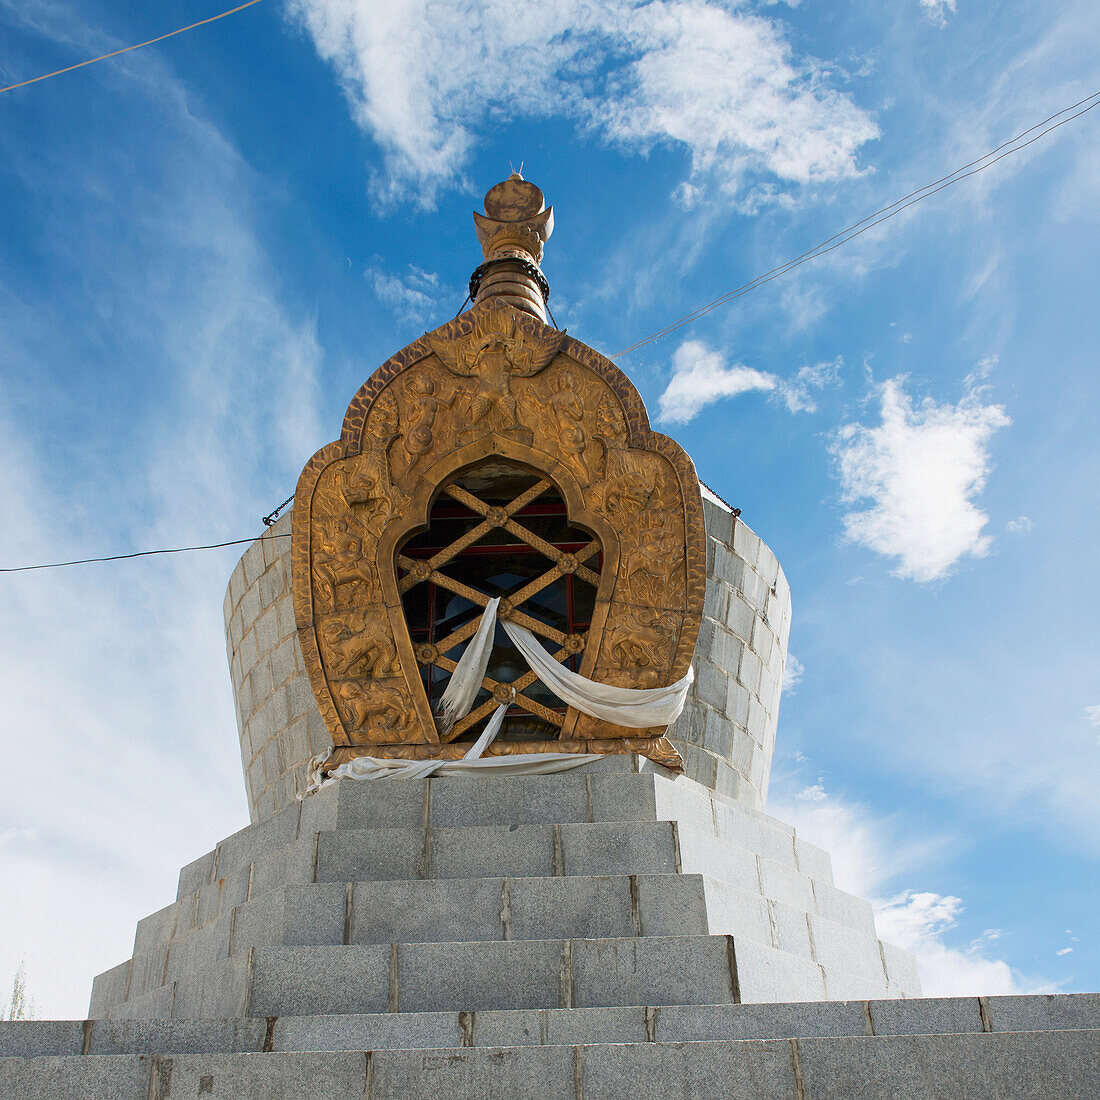 'Stone structure at the sera monastery;Lhasa xizang china'